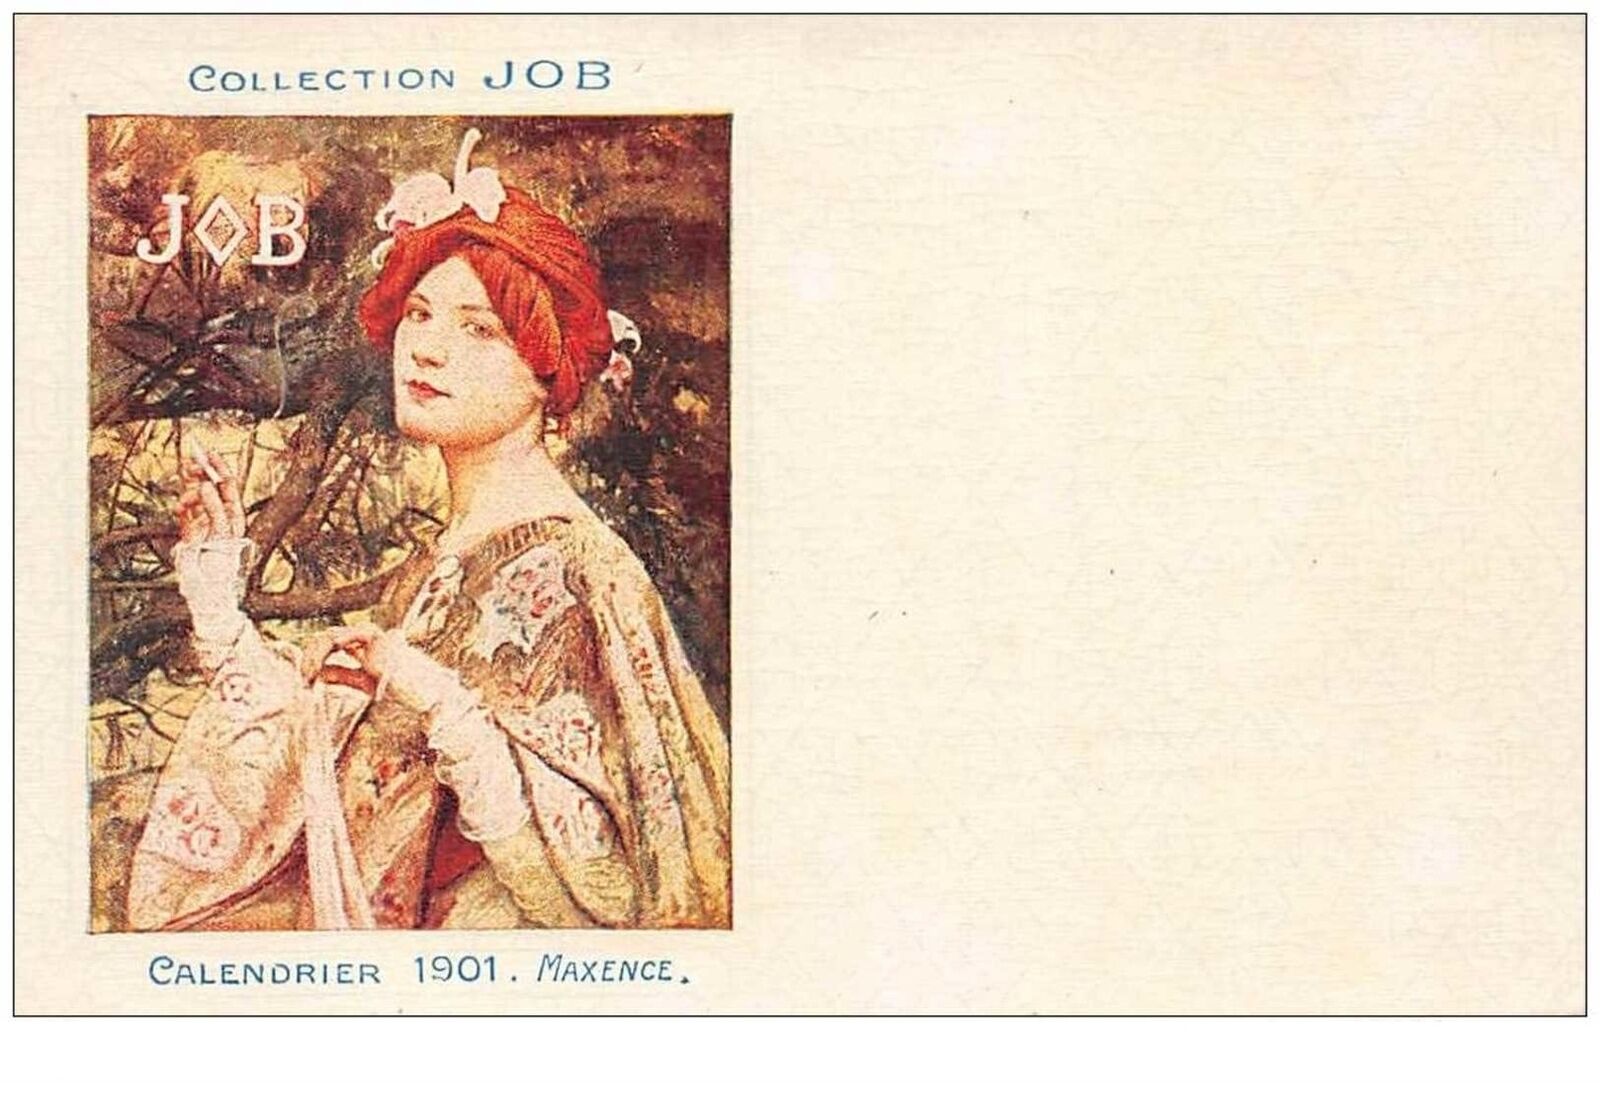 illustrator. No. 45440. 1901 calendar. maxence. job collection. publici 